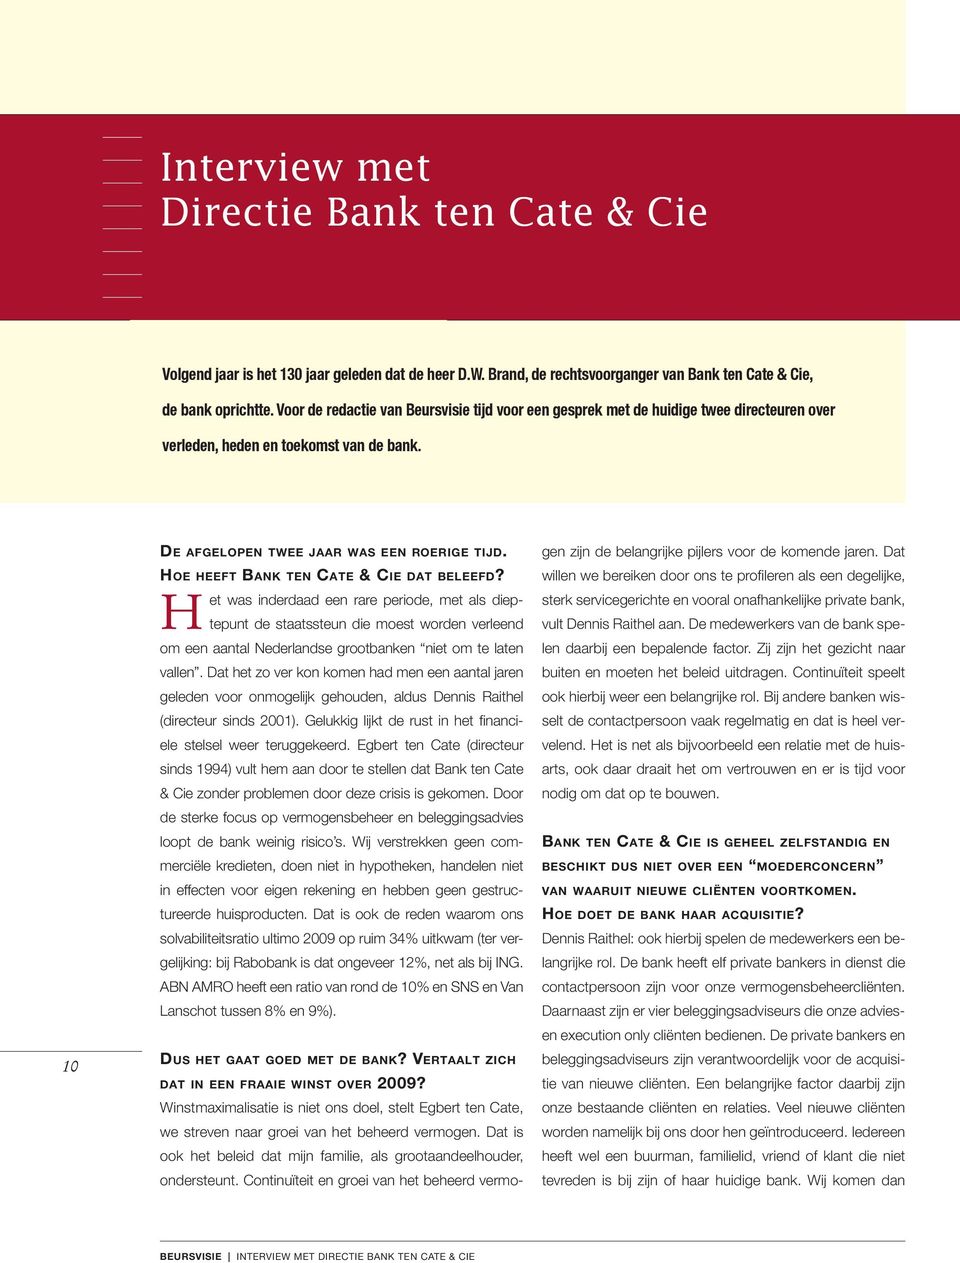 Hoe heeft Bank ten Cate & Cie dat beleefd?